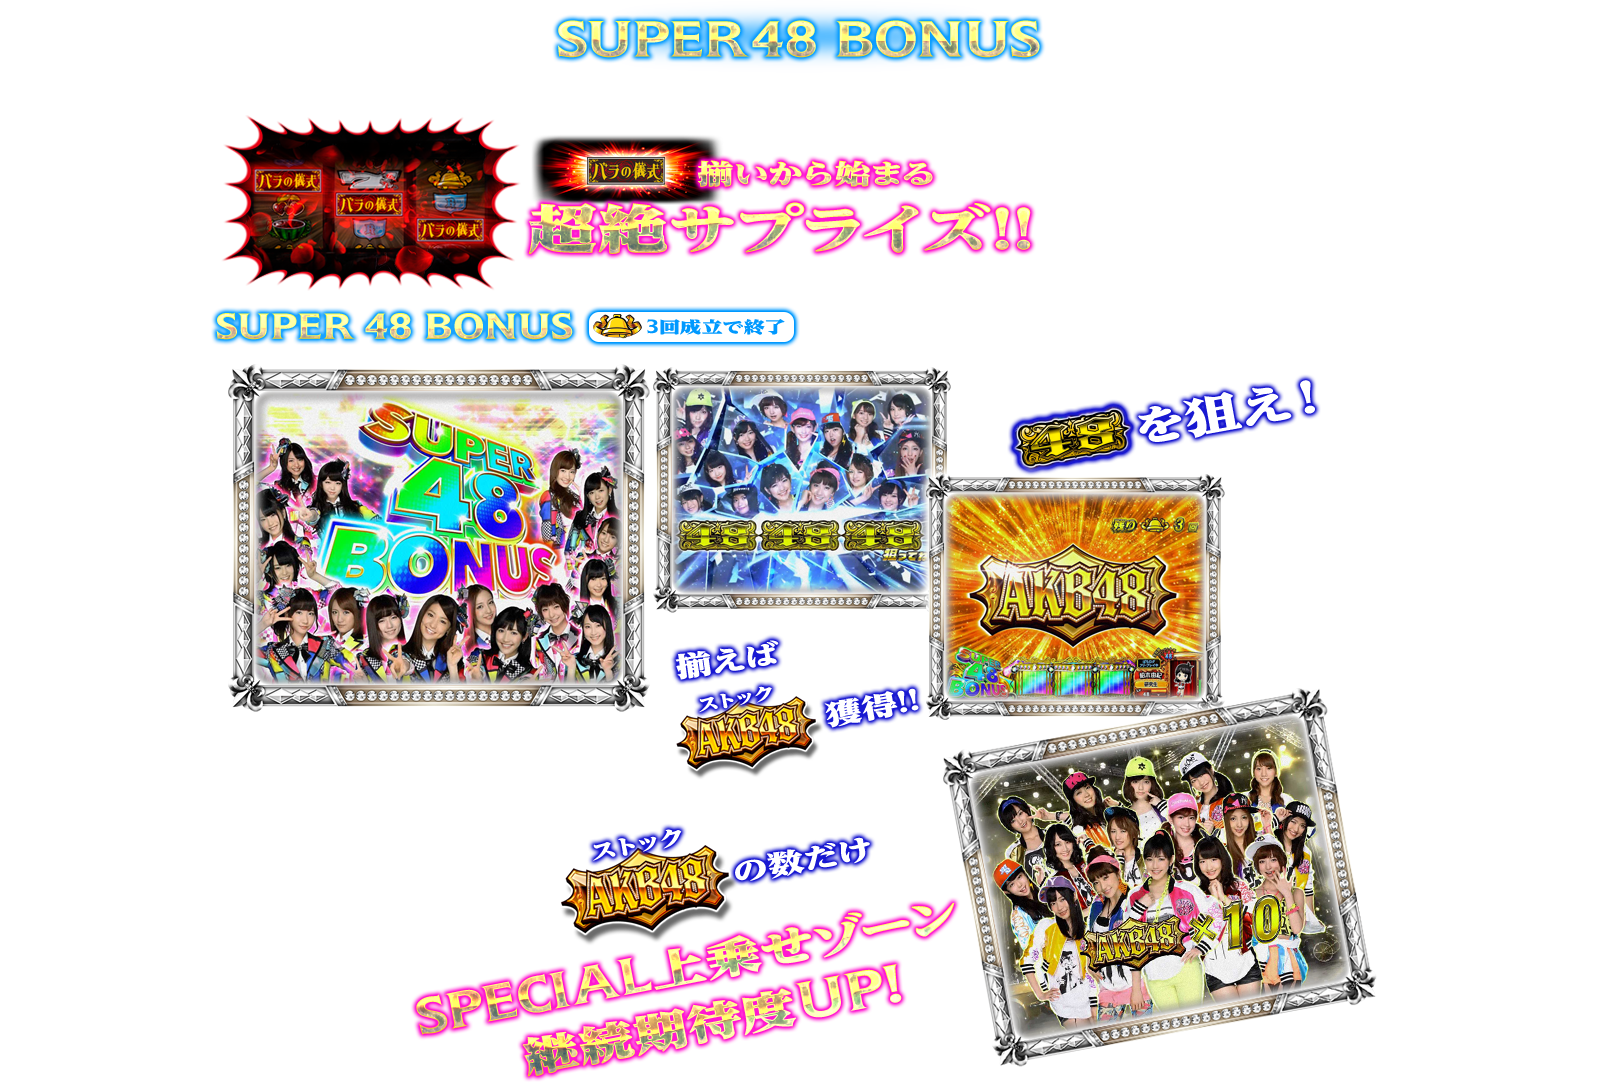 ぱちスロAKB48 バラの儀式の演出紹介。通常時のBONUSのSUPER 48 BONUSです。AKB48ファン、スロット初心者、ヘビーユーザーまで誰もが楽しめるDDスペックで登場!!